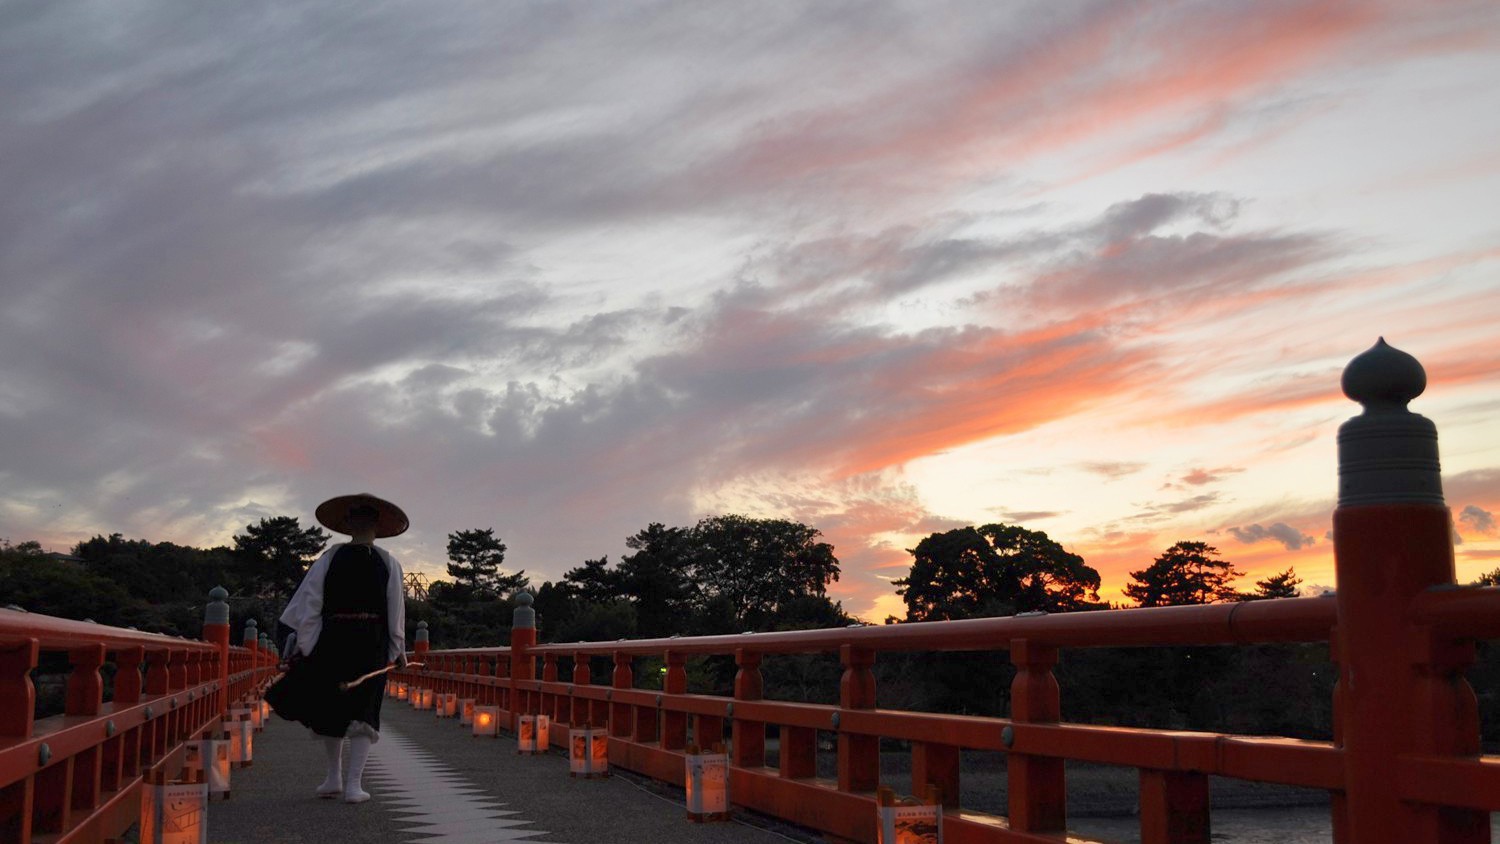 （夕暮れの朝霧橋）宇治の風景を華やかにする朱塗りの橋※画像はイメージ